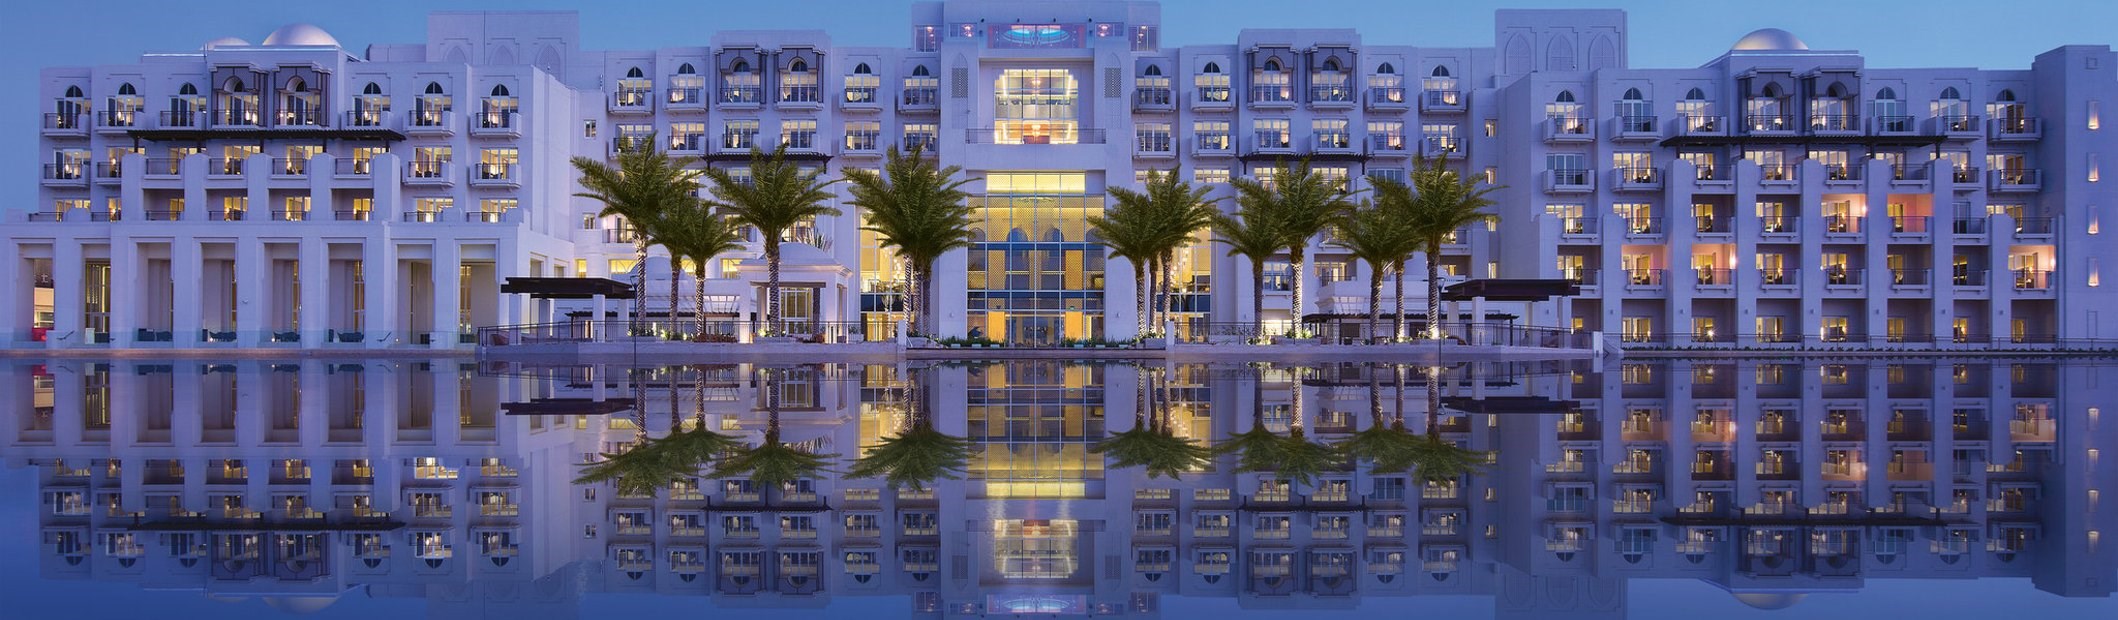 Basma Group and Arada partner with Minor Hotels to launch Anantara Sharjah Resort